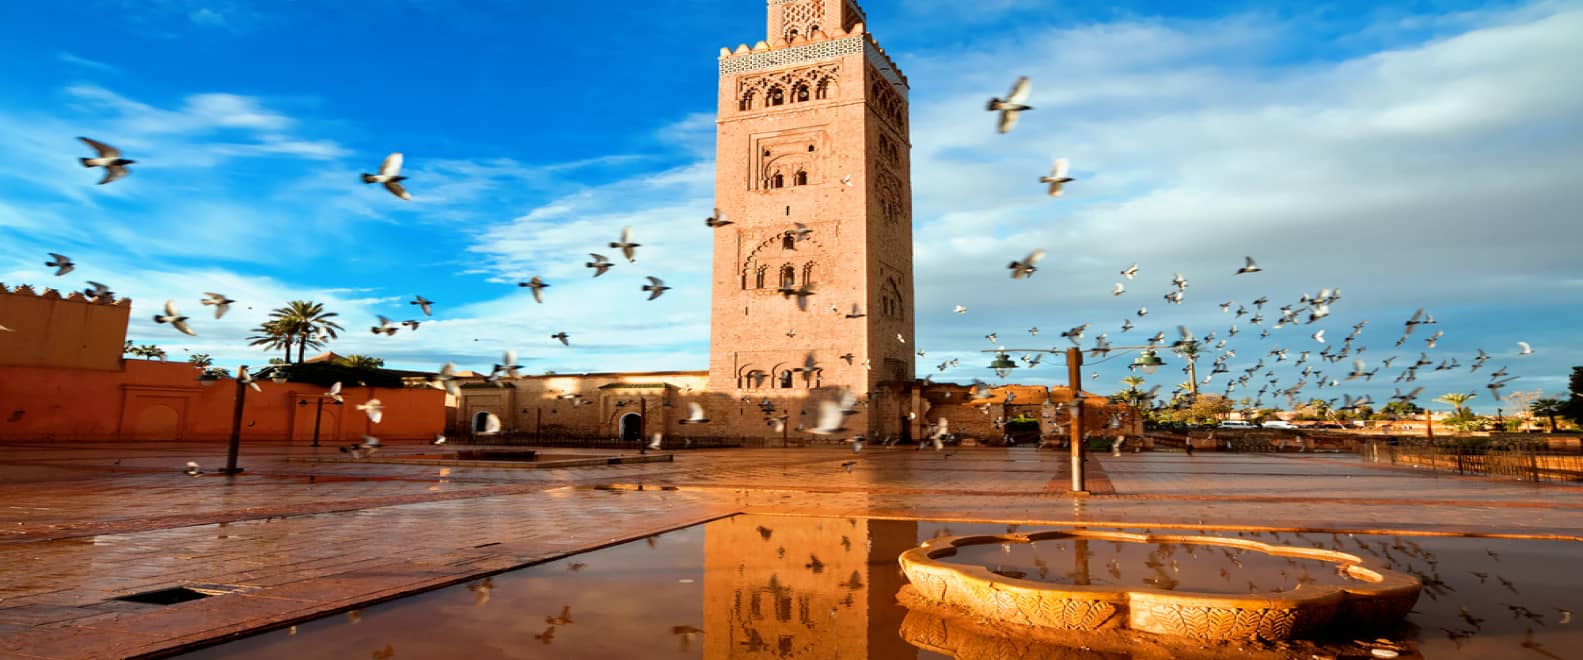 Le Maroc est une destination touristique populaire